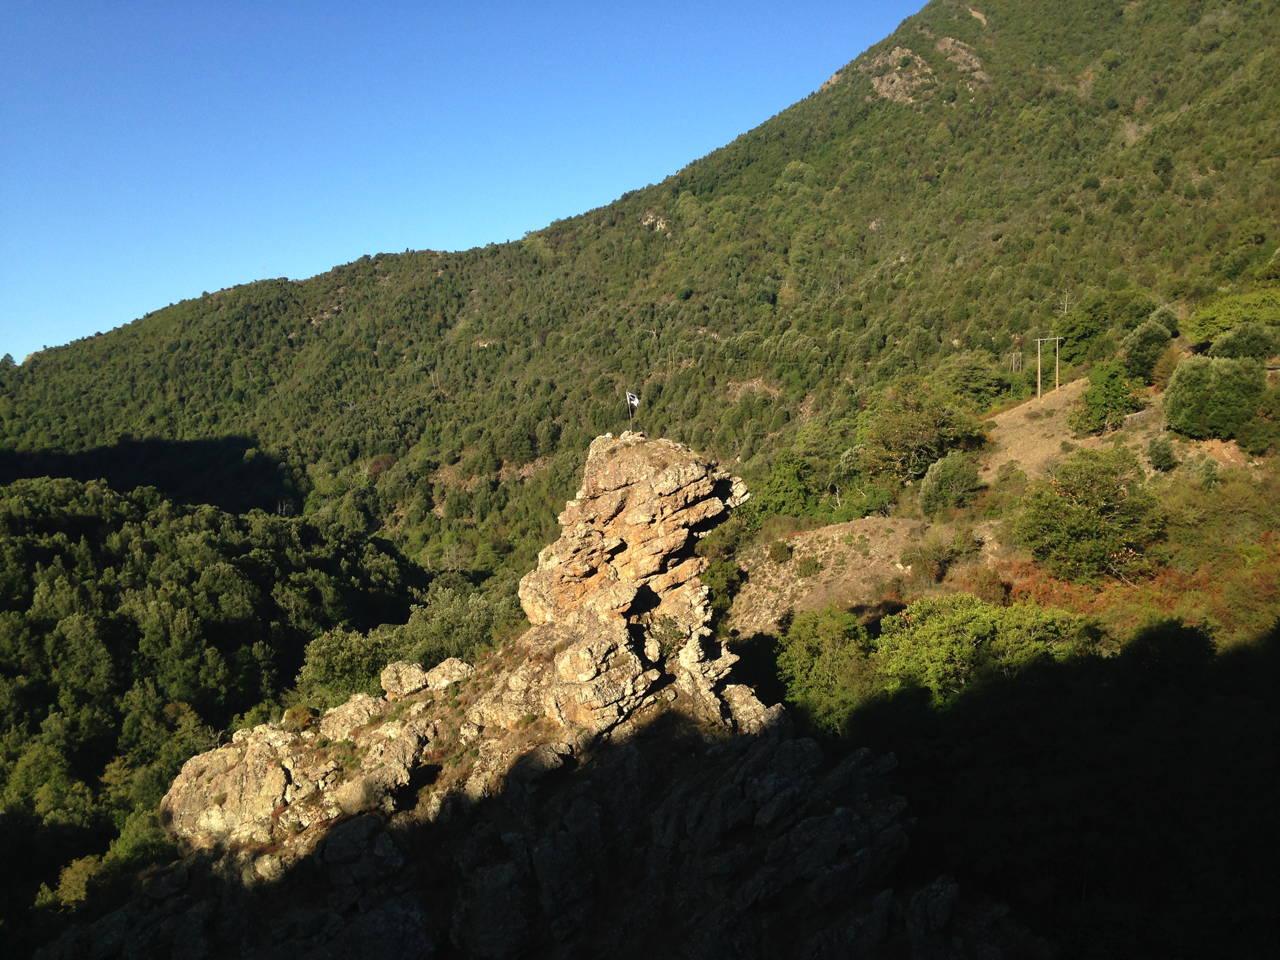 Le drapeau Corse flotte sur ce rocher